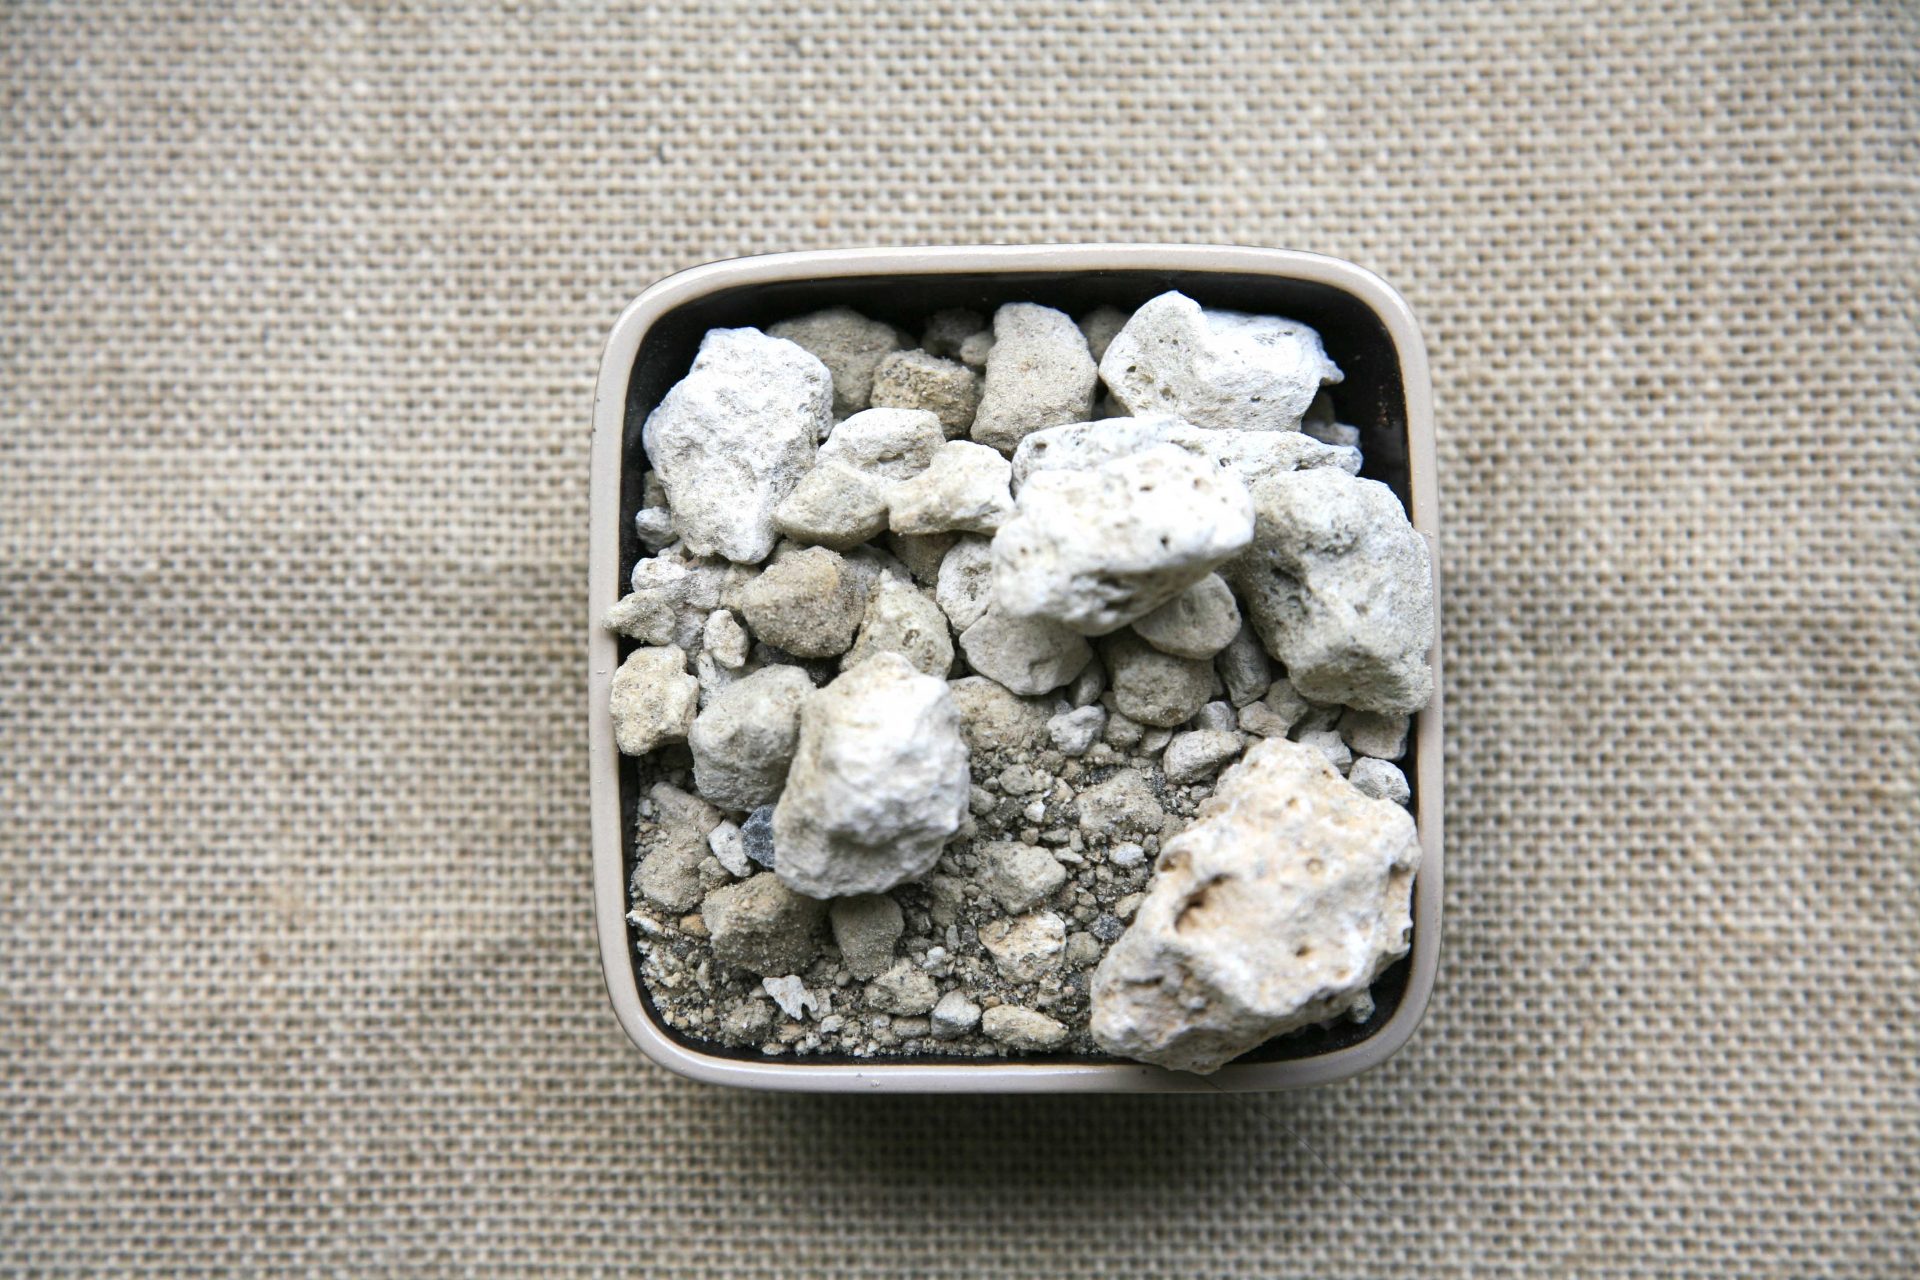 Celina Naturista - La piedra pómez es un material natural, ligero y poroso  con multitud de beneficios. Esta piedra de origen volcánico tiene diversas  características llamativas, la más resaltante es su porosidad